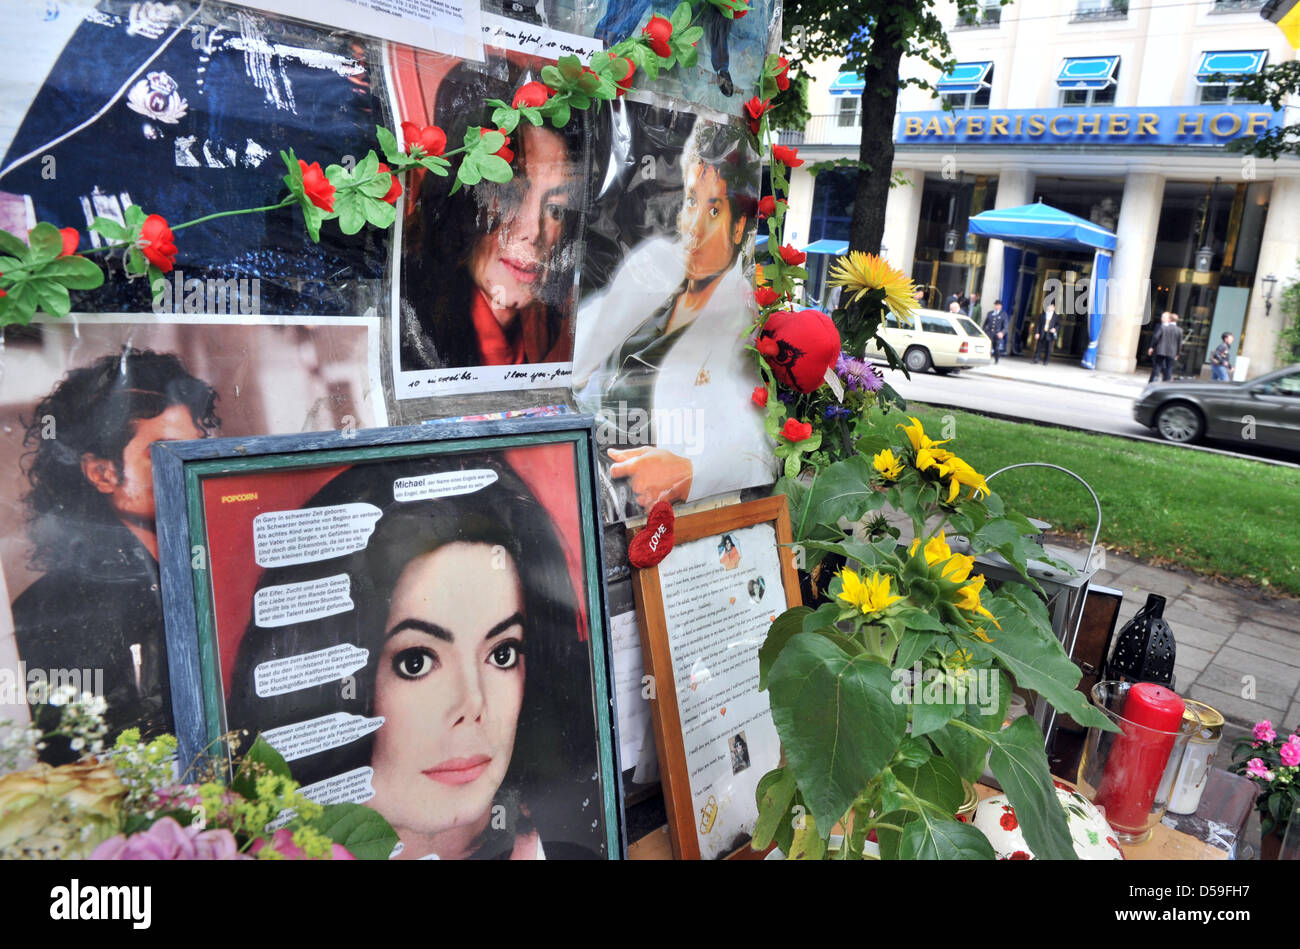 Images de Michael Jackson à la base du monument Orlando di Lasso, qui a été remodelé comme un mémorial pour Jackson, capturé à Munich, Allemagne, le 22 juin 2010. Fans ont porté sur la base du monument avec des souvenirs, des photos, des fleurs, des figurines et des lettres personnelles. Le monument est situé à proximité de l'hôtel Bayerischer Hof', 'où Jackson séjourné au cours d'une visite Banque D'Images